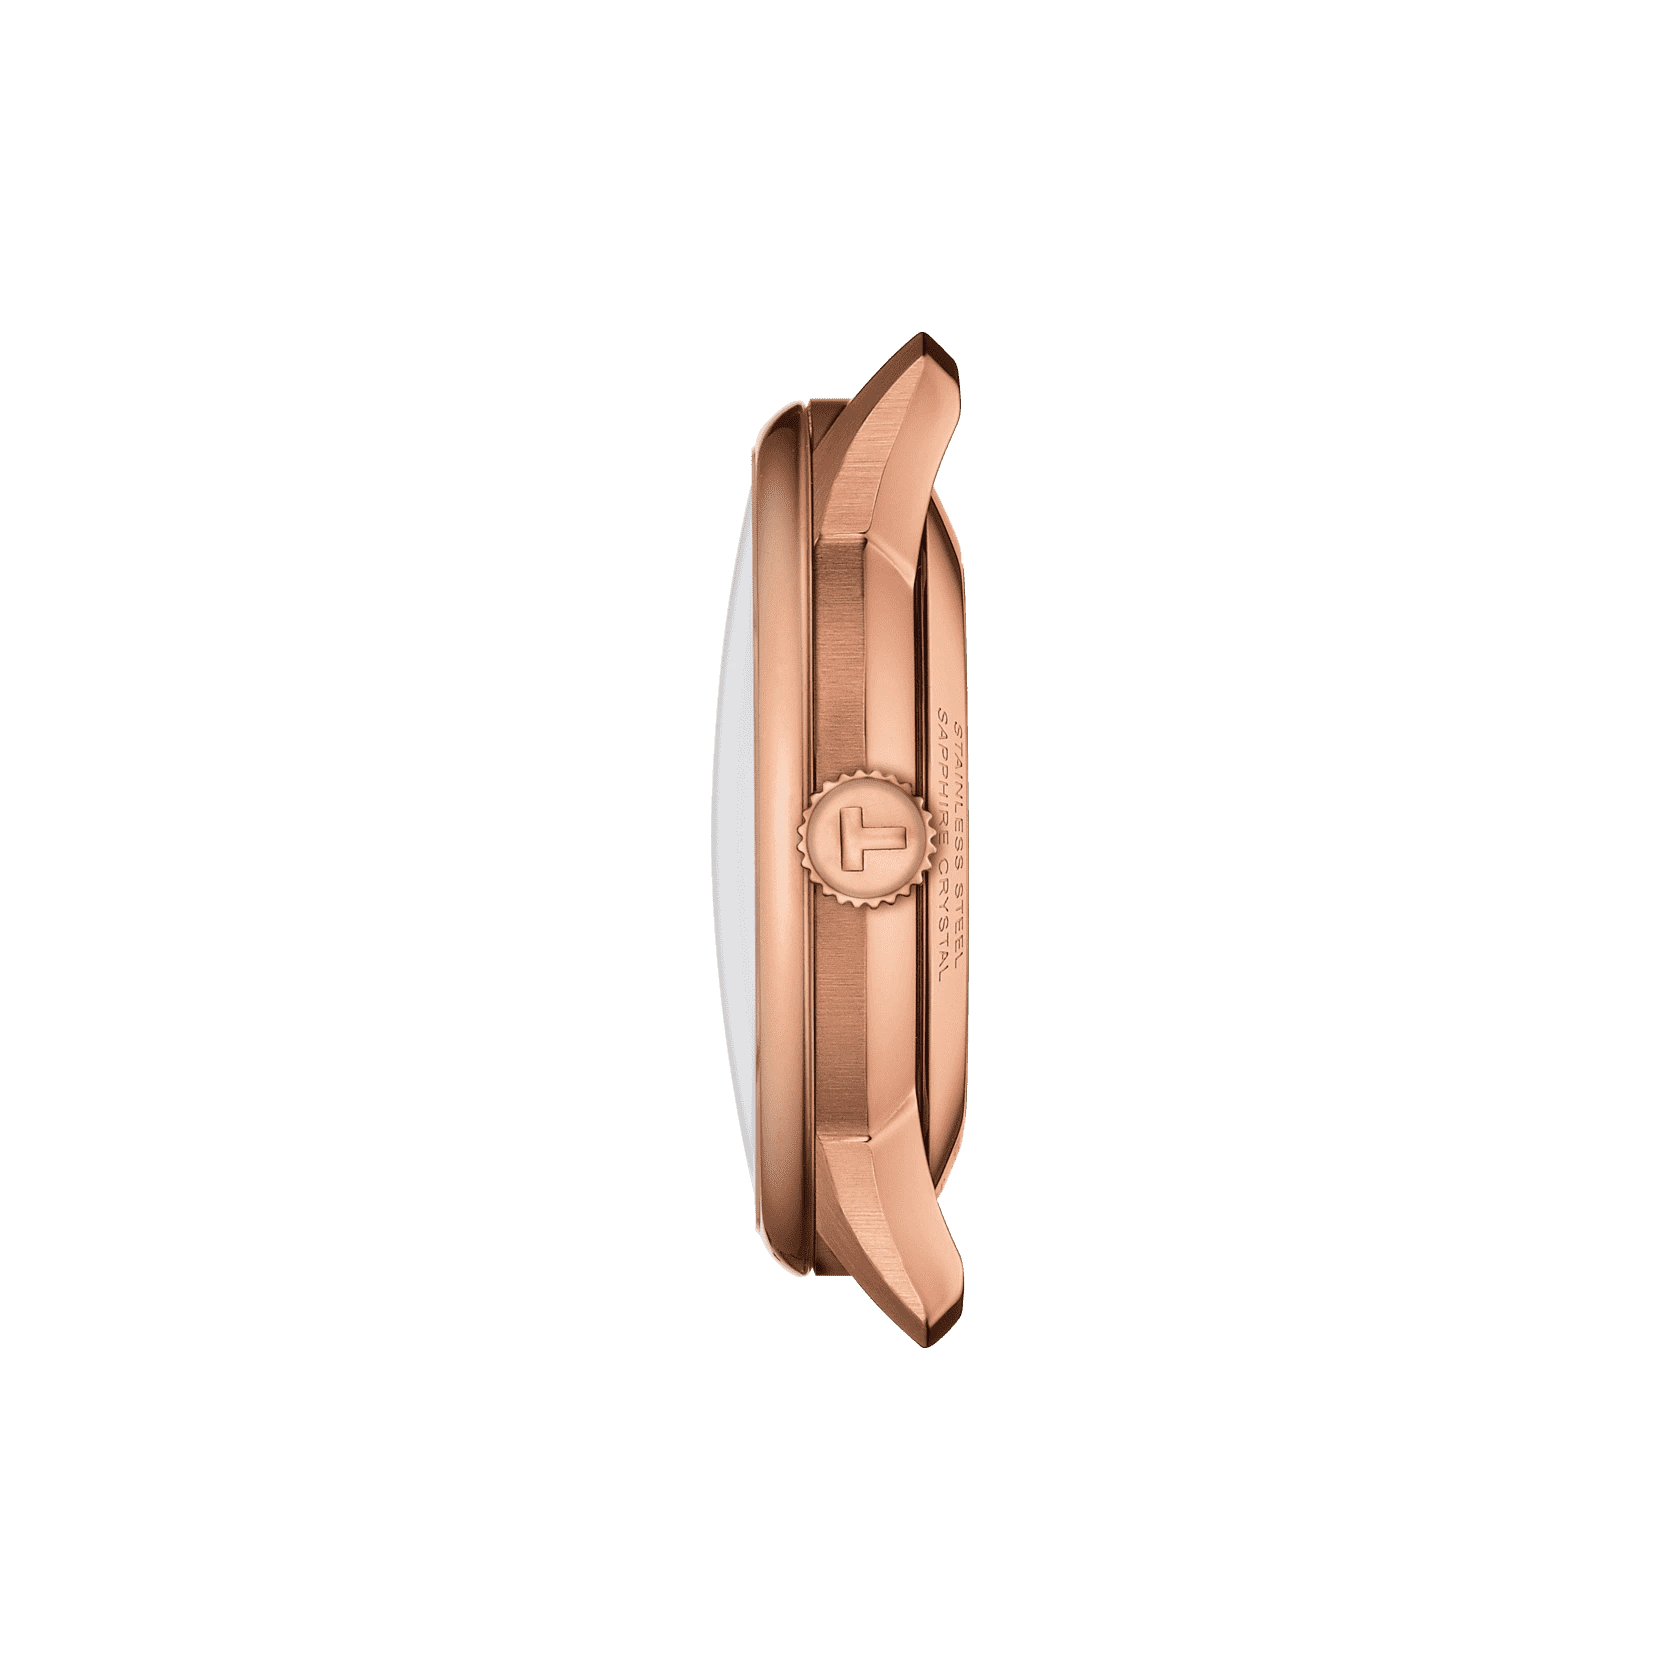 Tissot Chemin Des Tourelles Powermatic 80 39mm Rose Gold Men's Watch T1398073603100